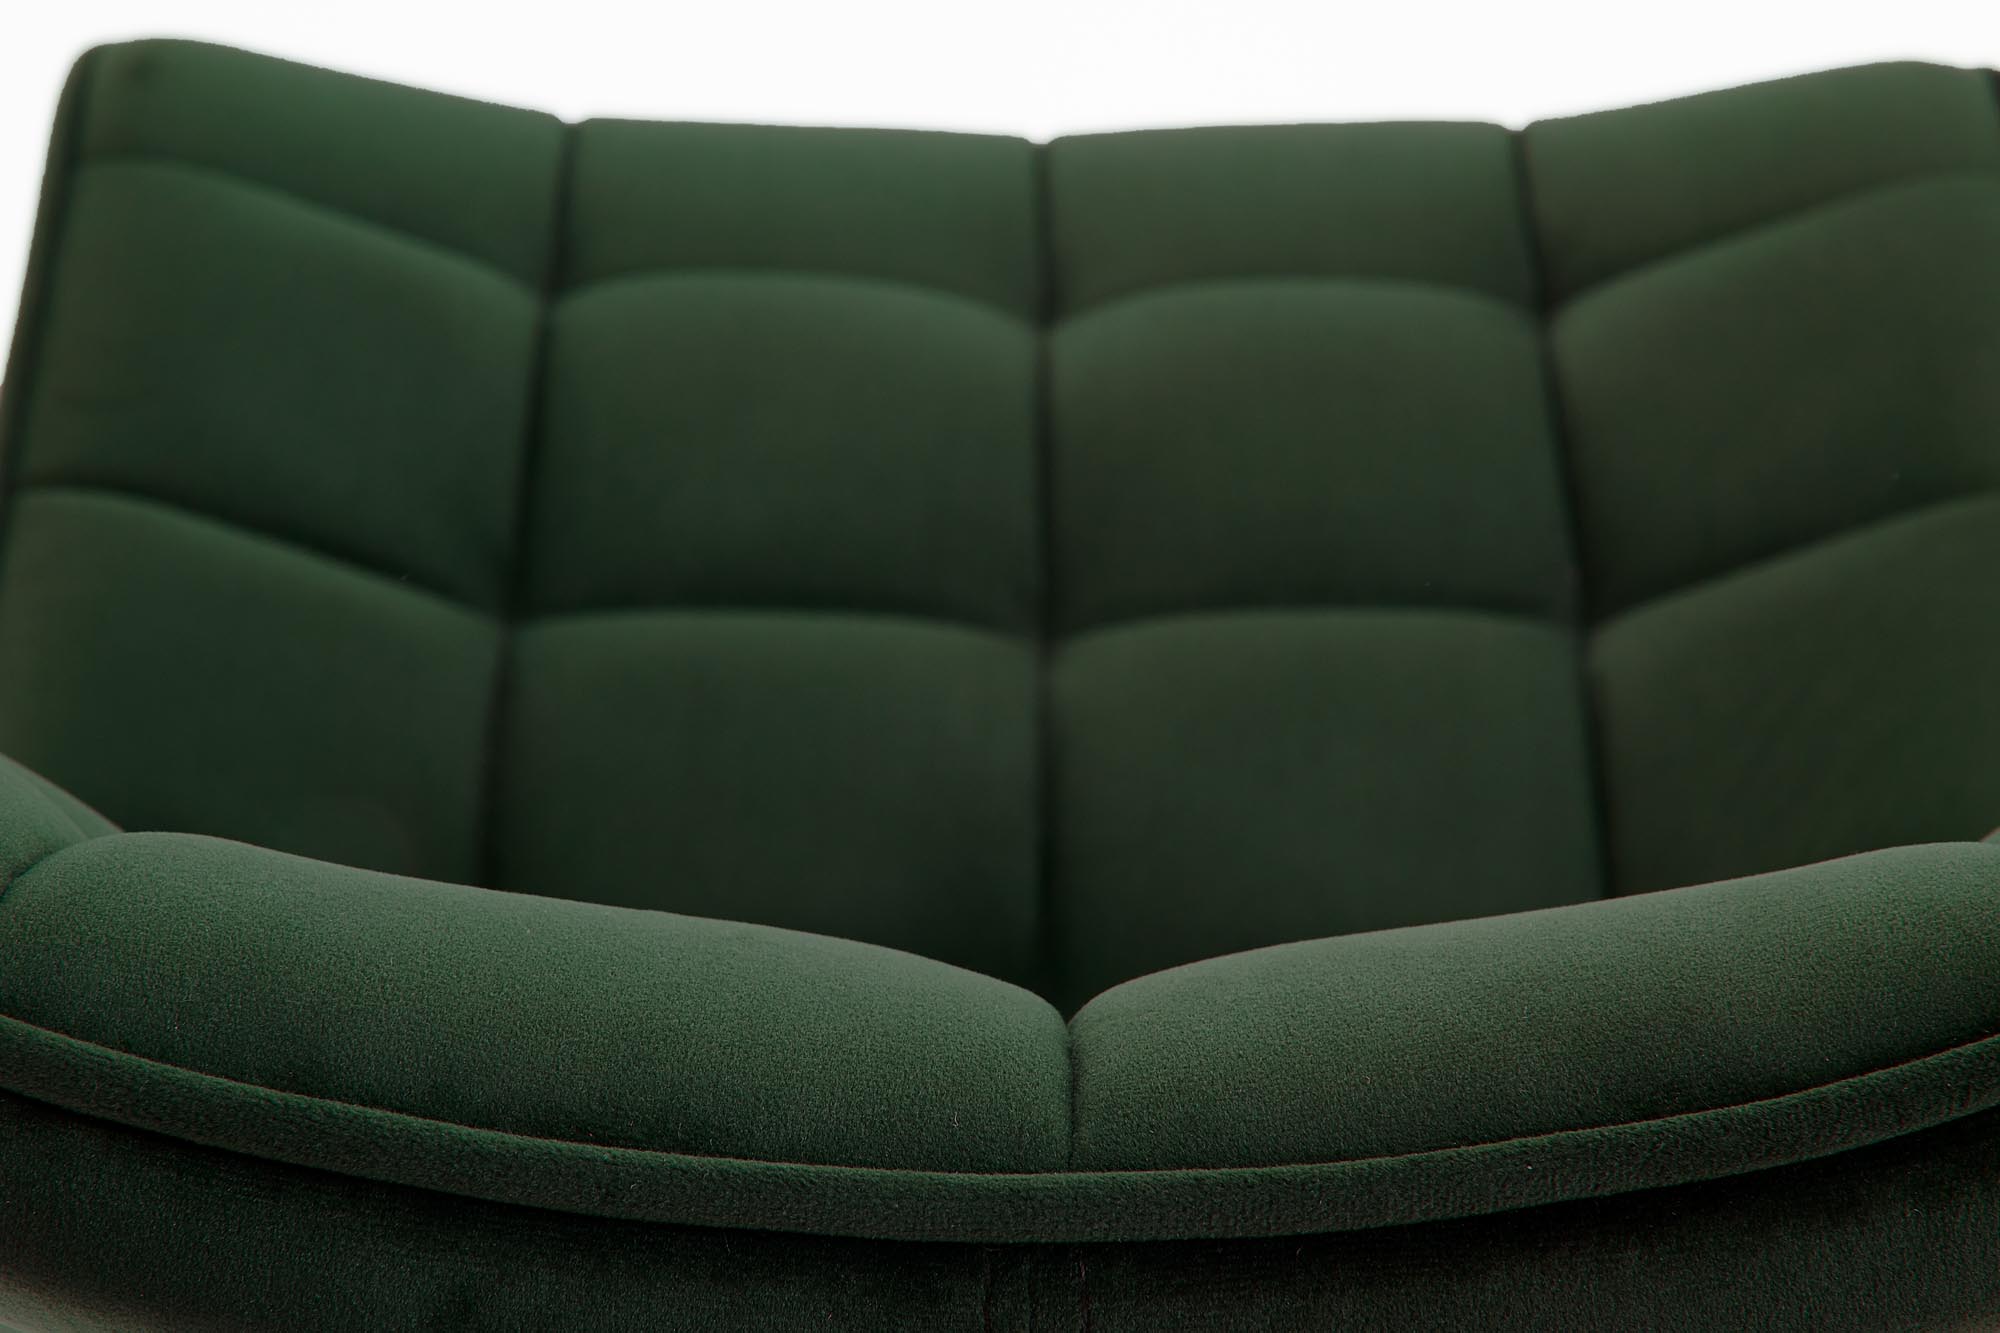 Krzesło tapicerowane K332 na metalowych nogach - ciemny zielony / czarne nogi krzesło tapicerowane k332 - ciemny zielony